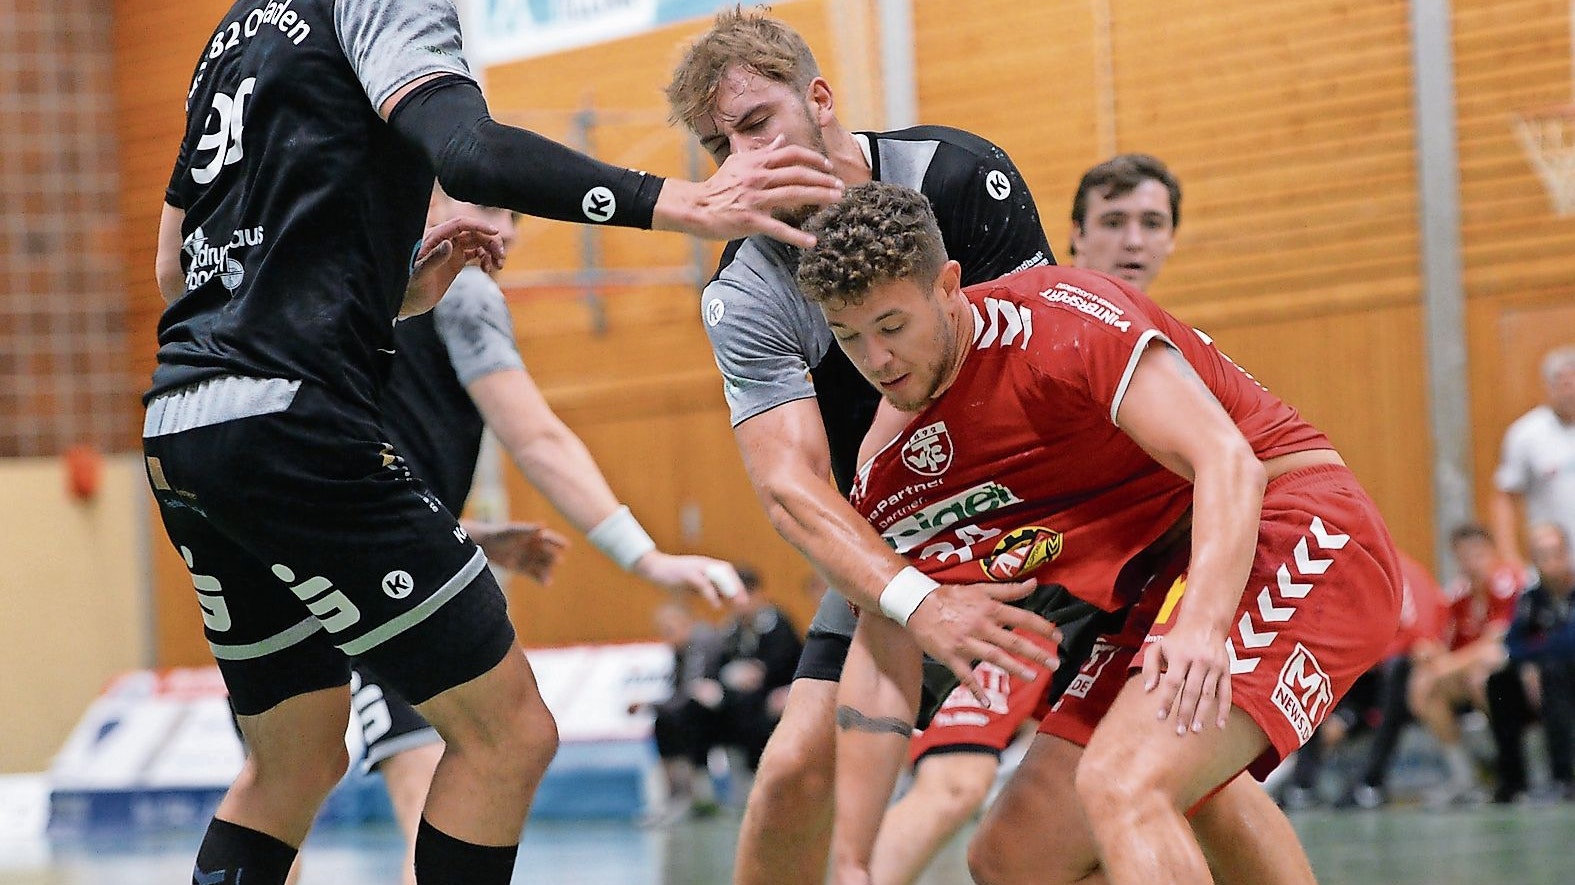 Endlich wieder Handball: Für den TV Cloppenburg (hier: Bence Lugosi, rotes Trikot, im Testspiel gegen Opladen) steht am Samstag das erste Spiel im Ligapokal an.Foto: Langosch